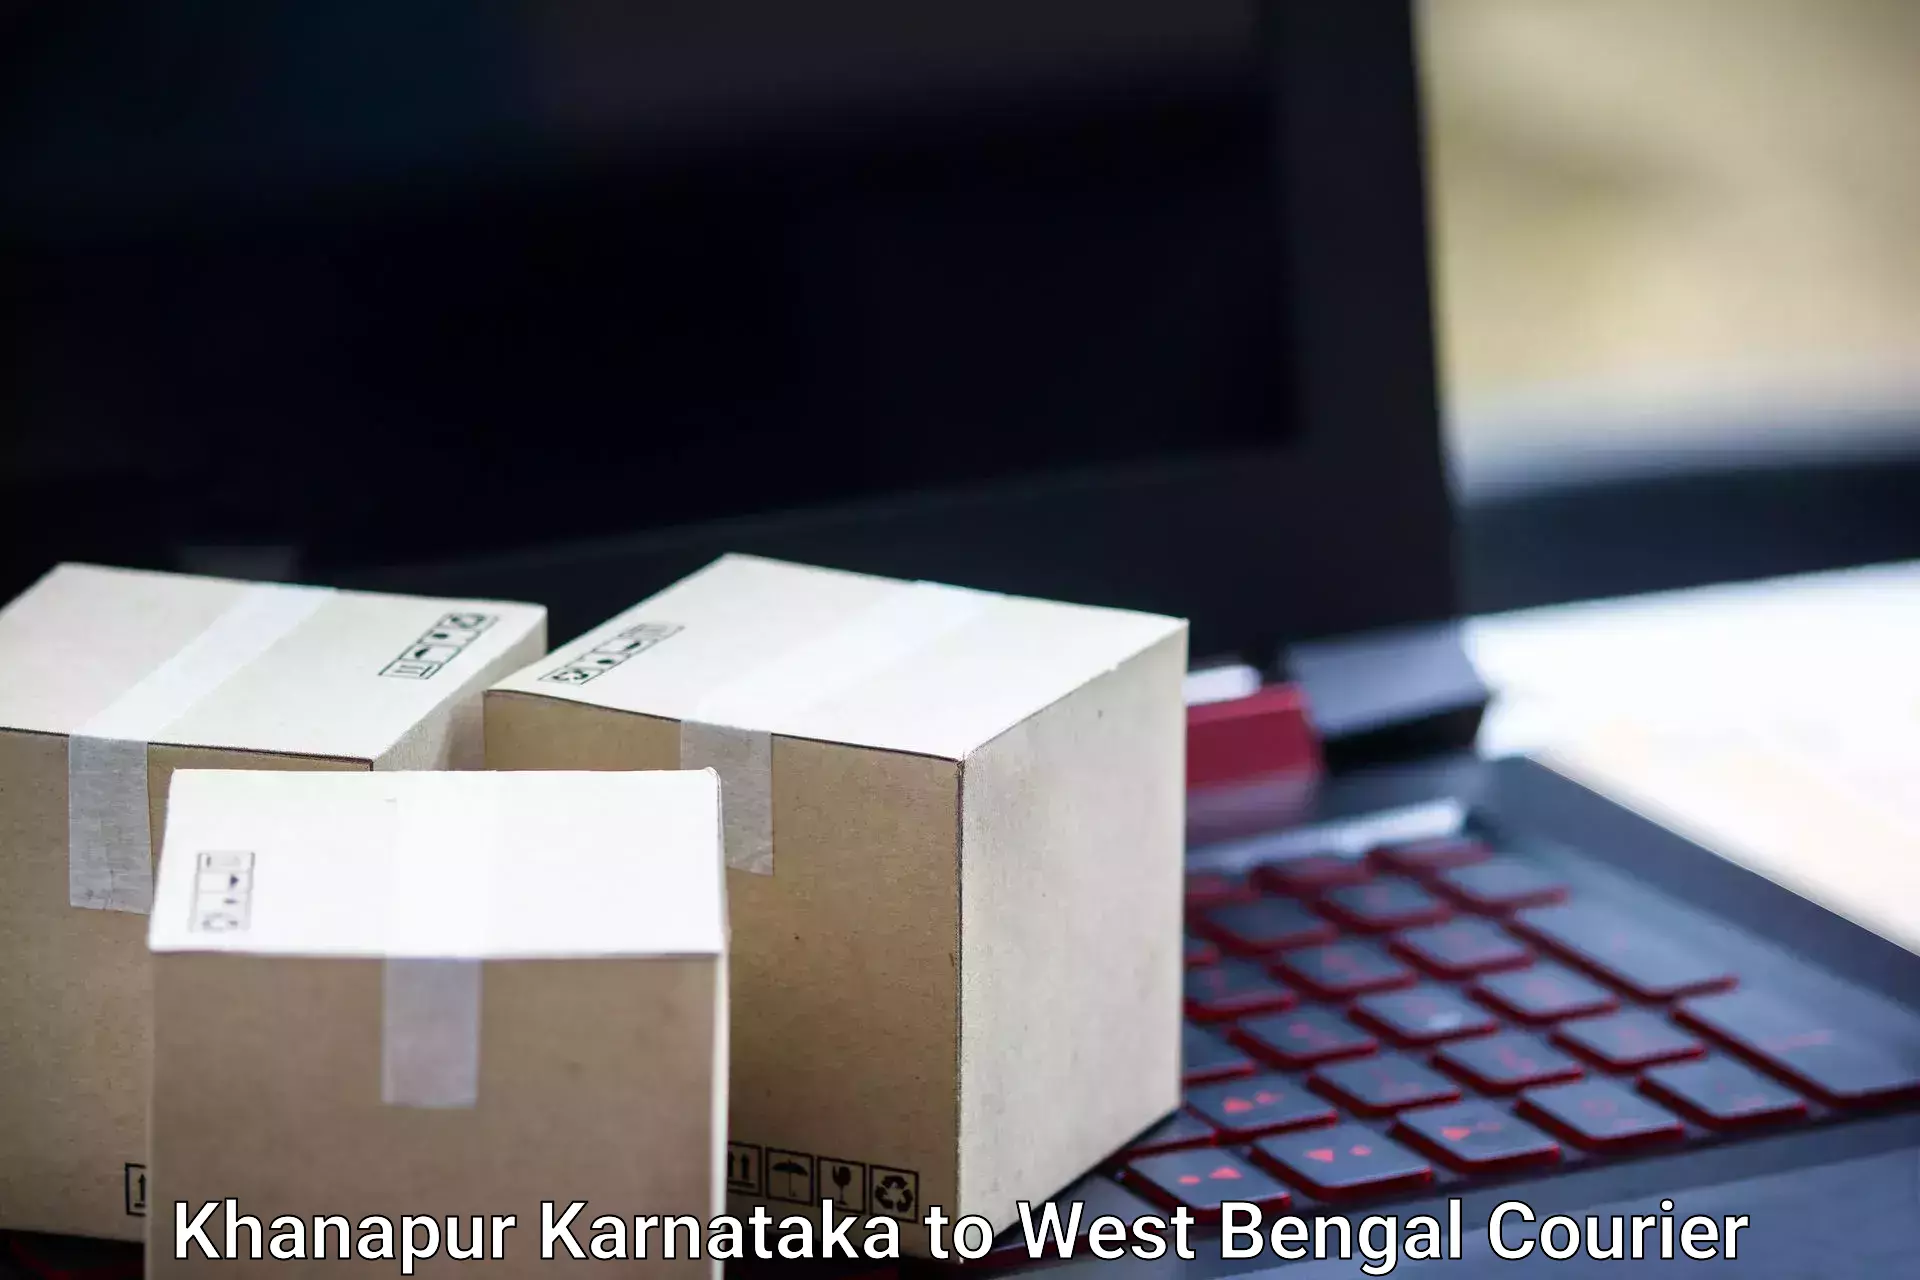 Baggage shipping experts Khanapur Karnataka to Kamarpukur